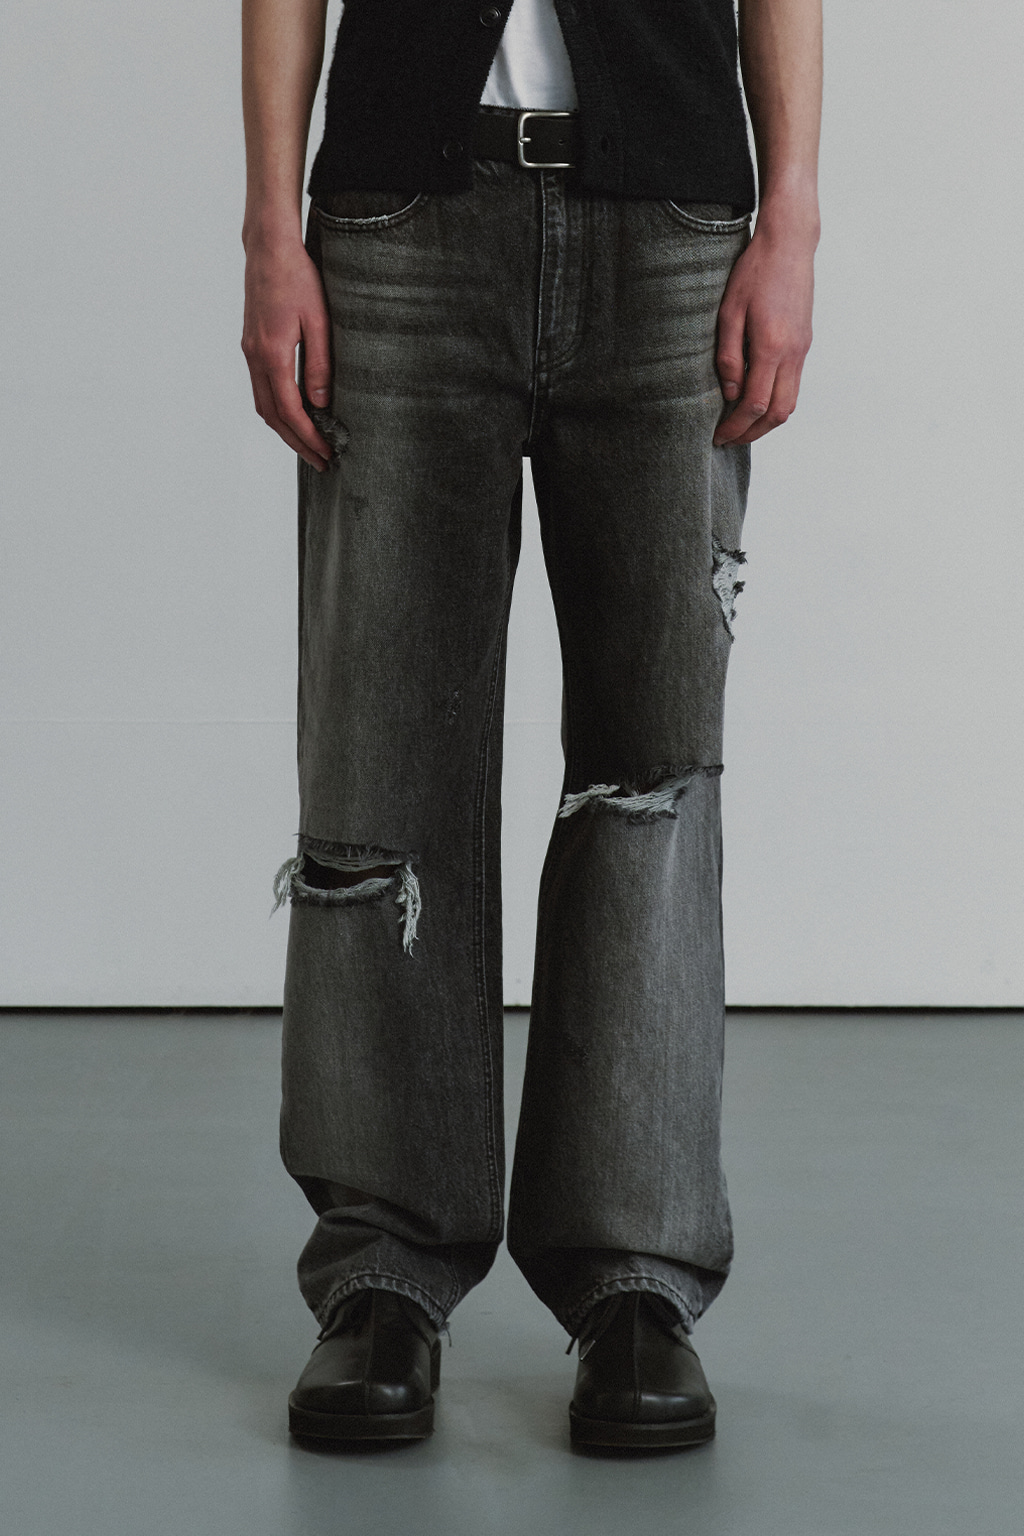 FN Damage Jeans (Black)